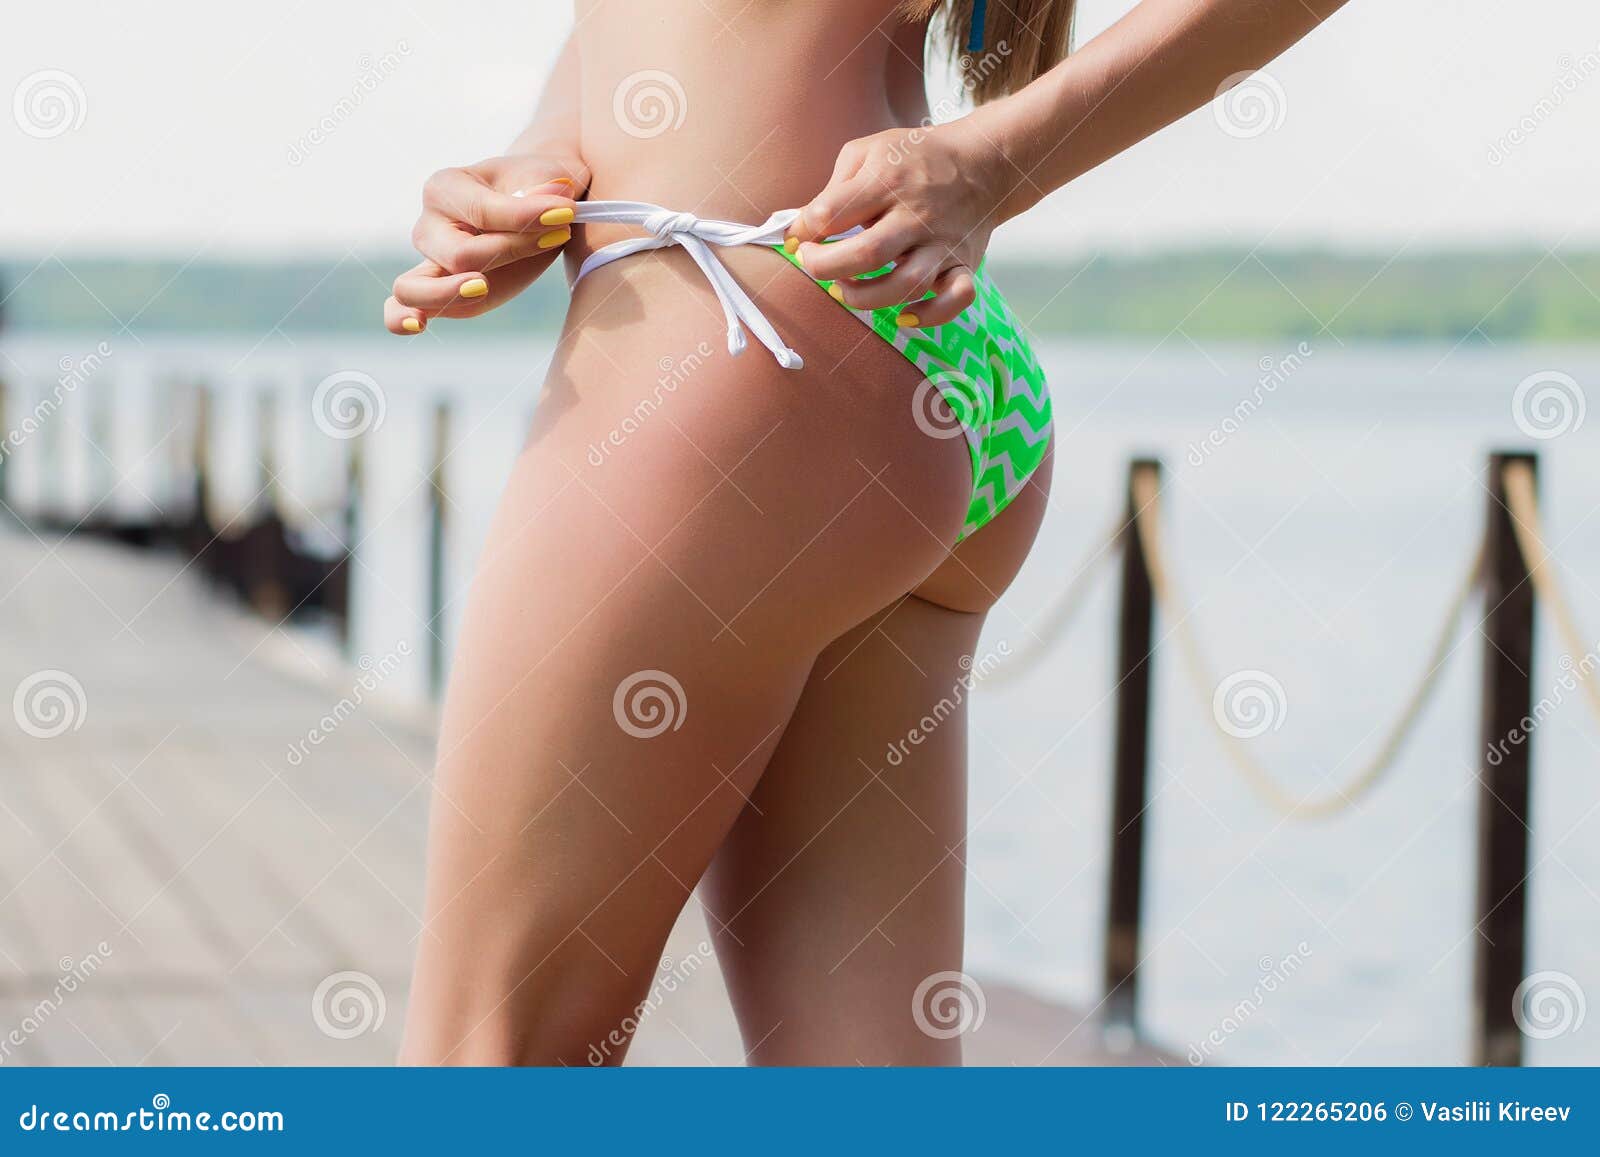 untying bikini bottom - afyonosgb.com.